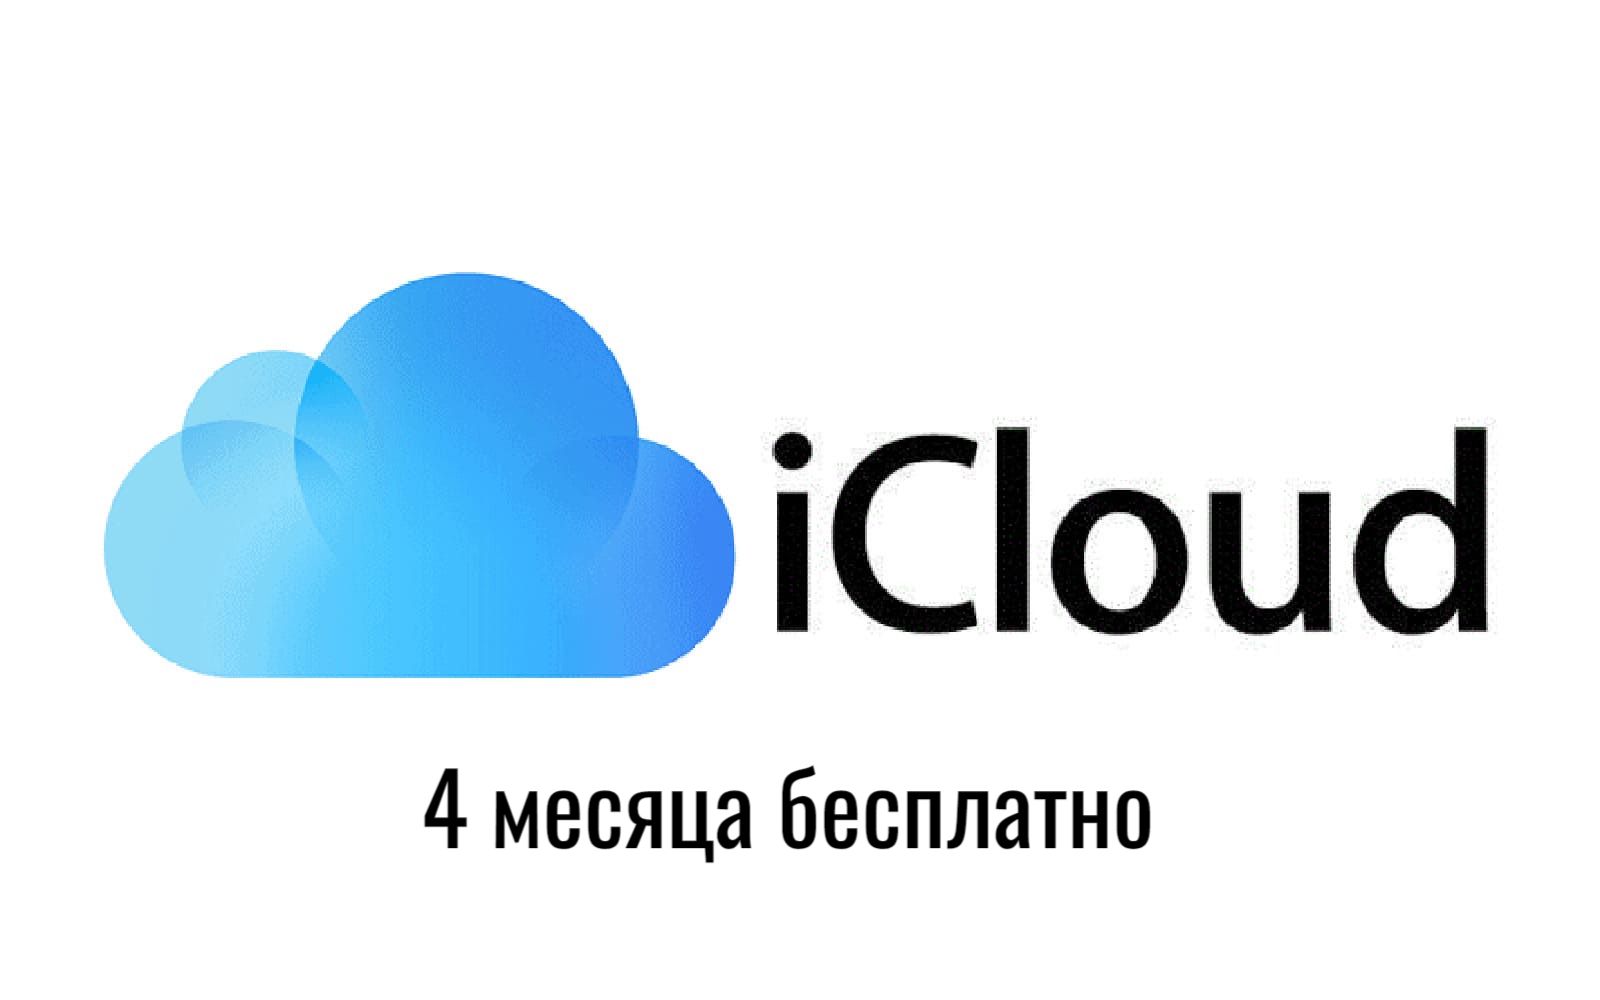 Подписка iCloud 50 ГБ хранилище на 4 месяца - промокод активации